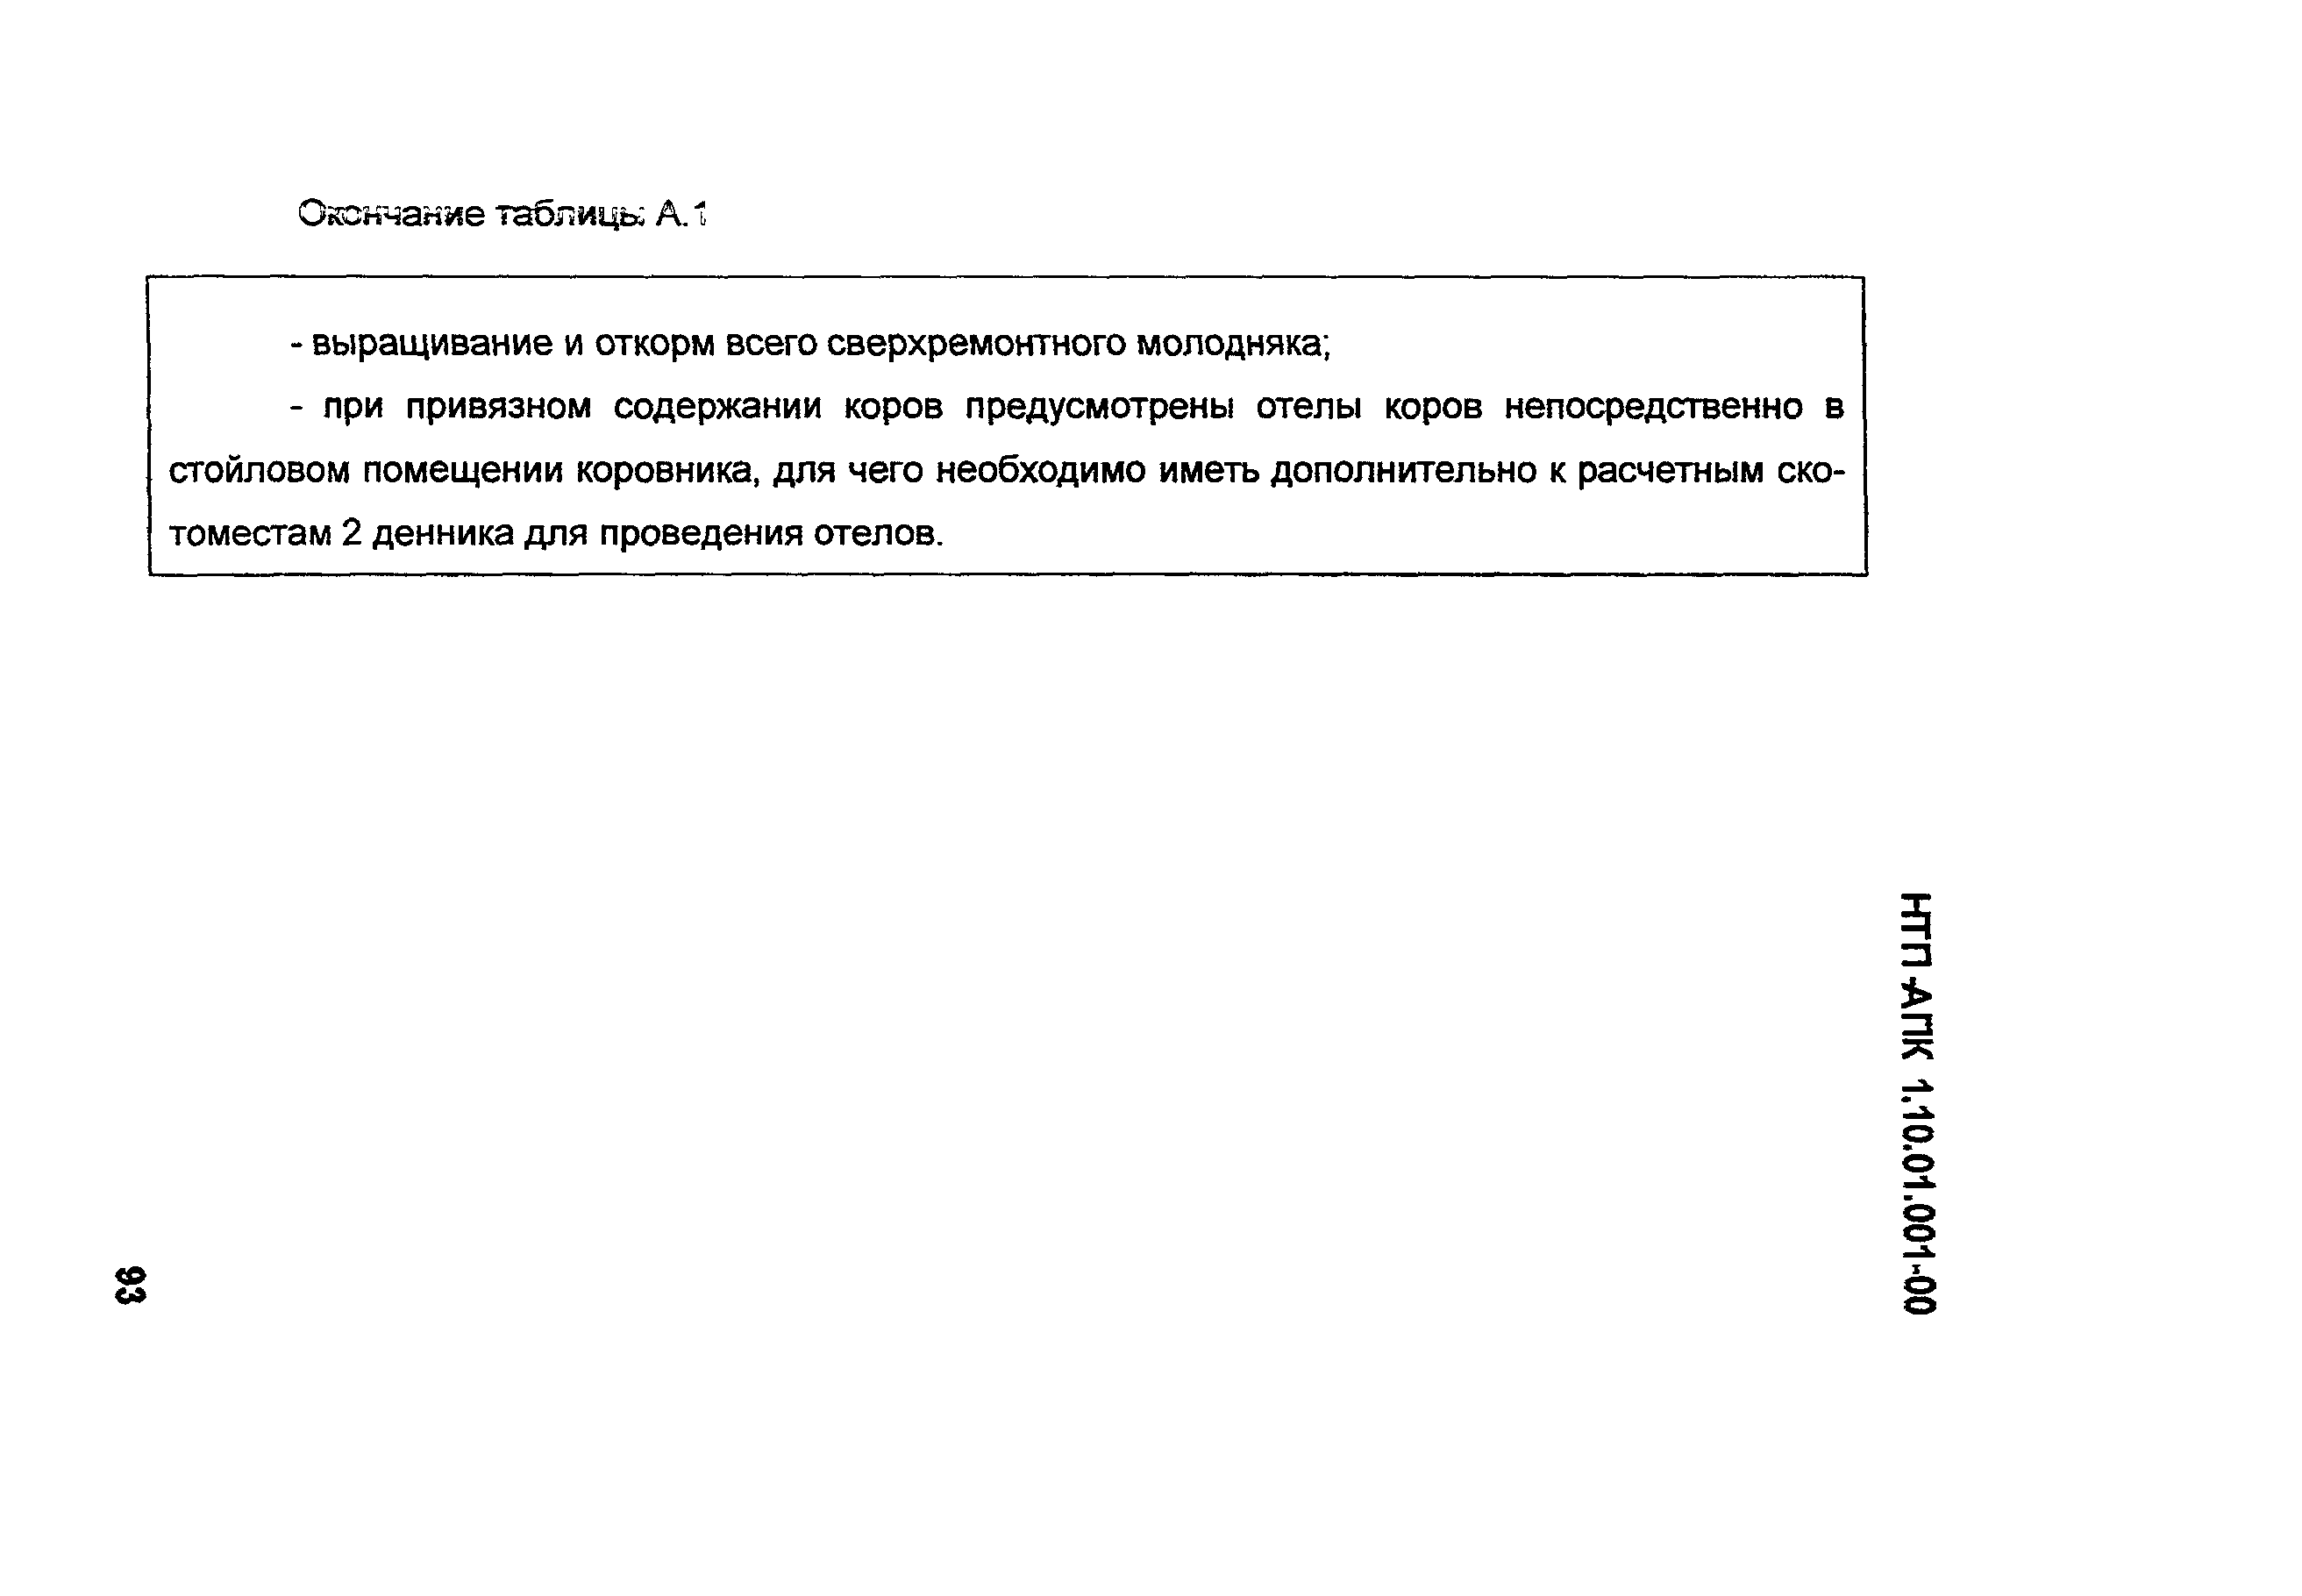 НТП АПК 1.10.01.001-00